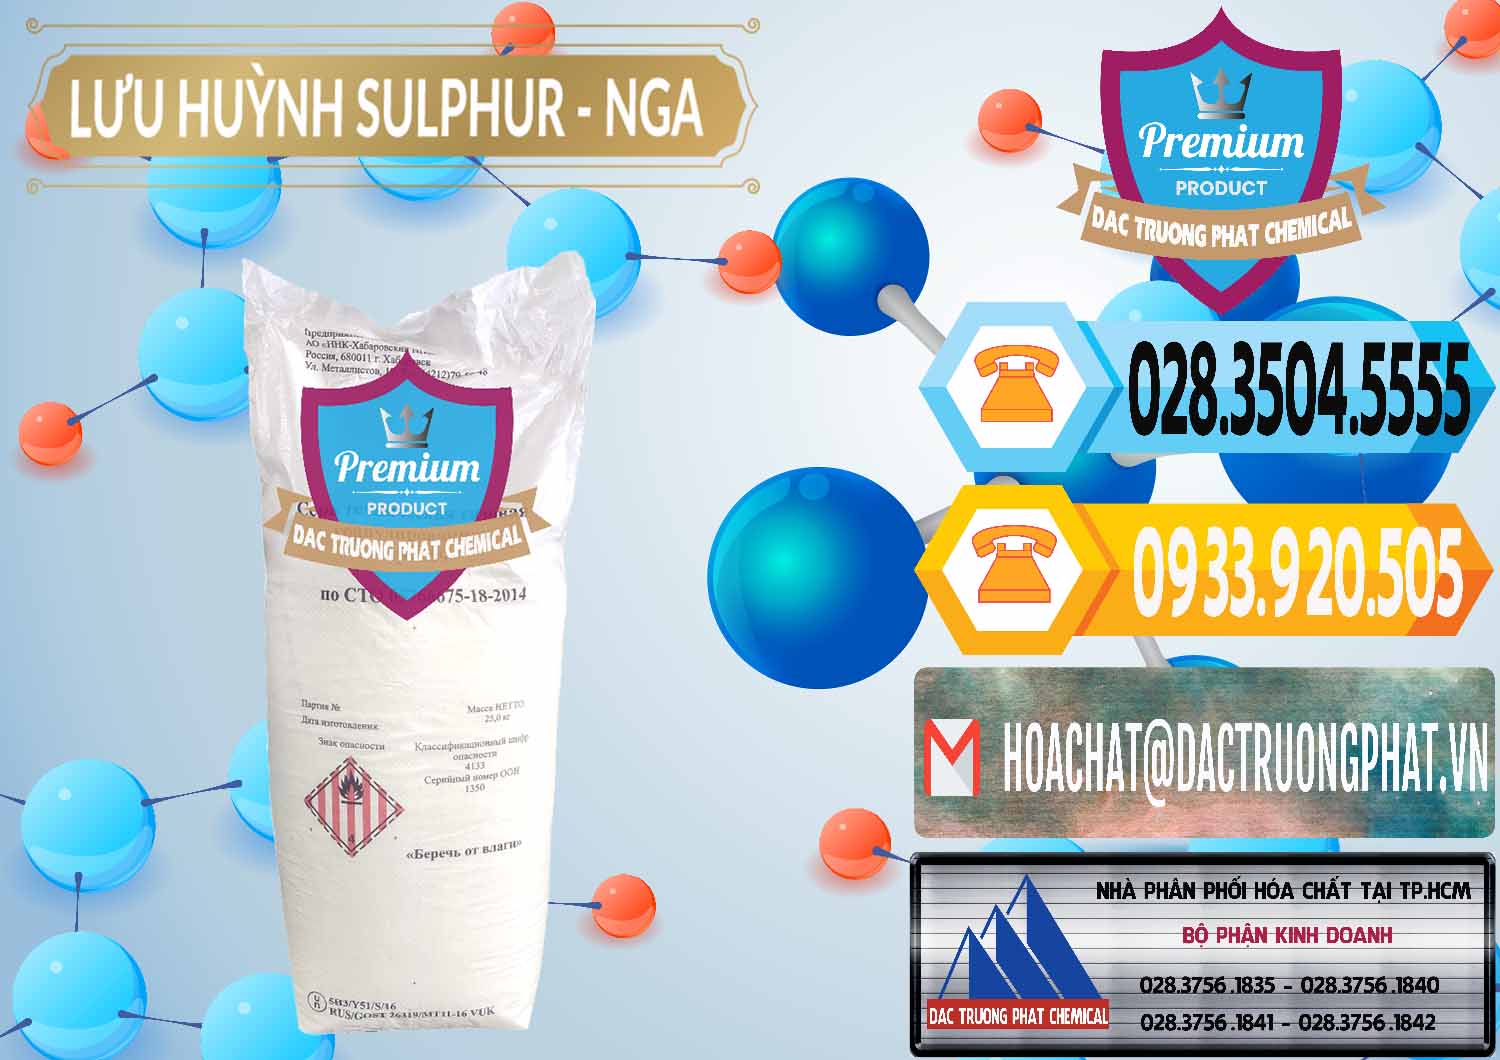 Cty kinh doanh và bán Lưu huỳnh Hạt - Sulfur Nga Russia - 0200 - Nơi chuyên cung cấp ( kinh doanh ) hóa chất tại TP.HCM - hoachattayrua.net